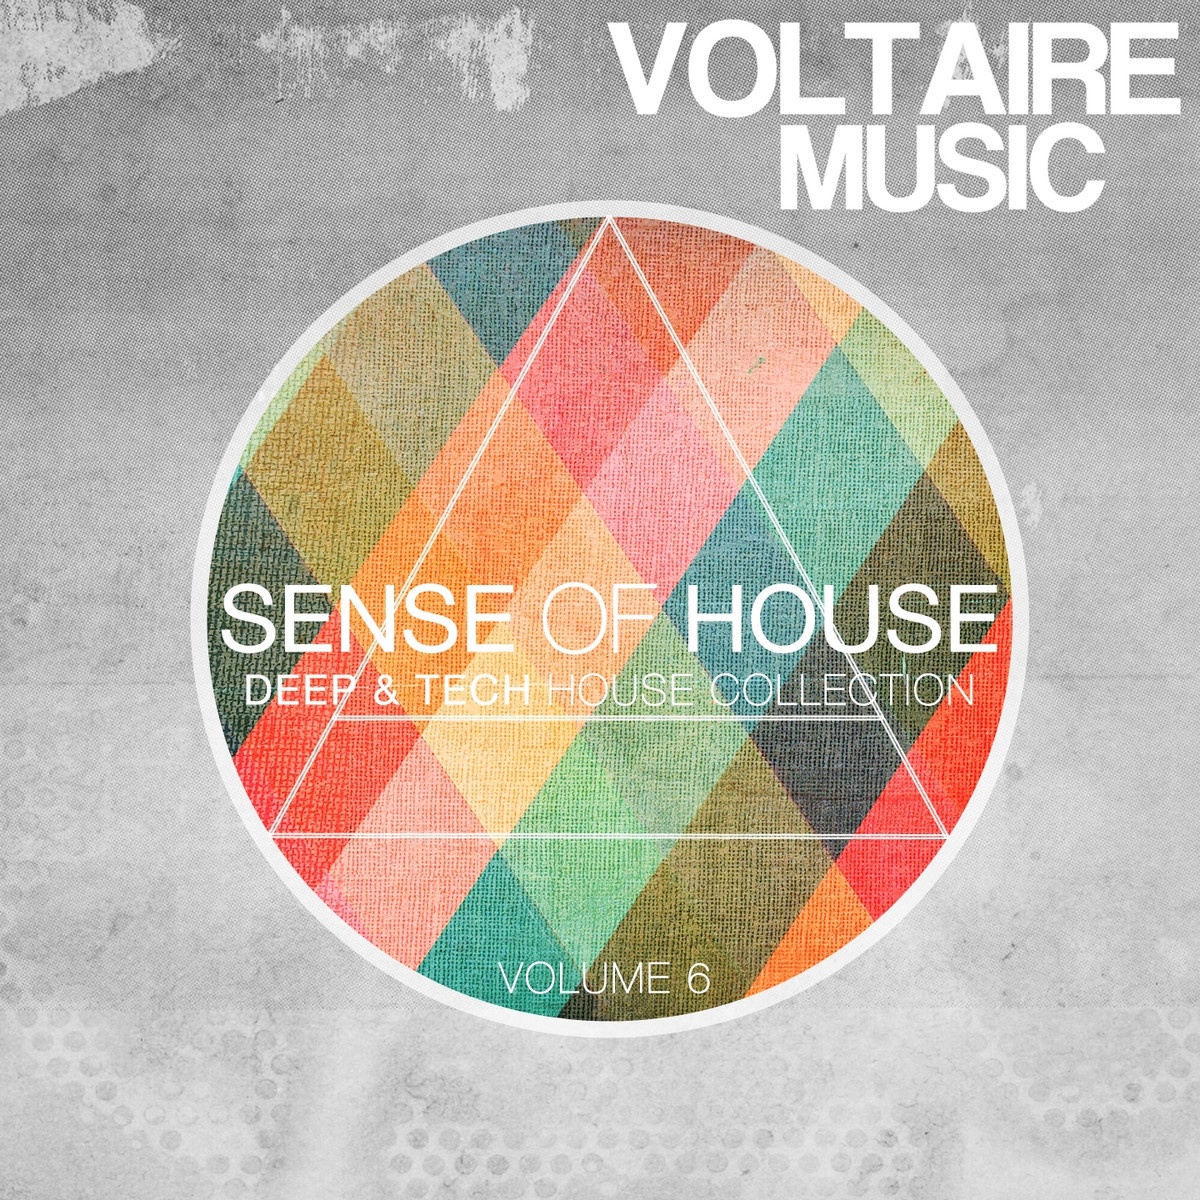 Sense of House, Vol. 6 (Deep & Tech House Collection)